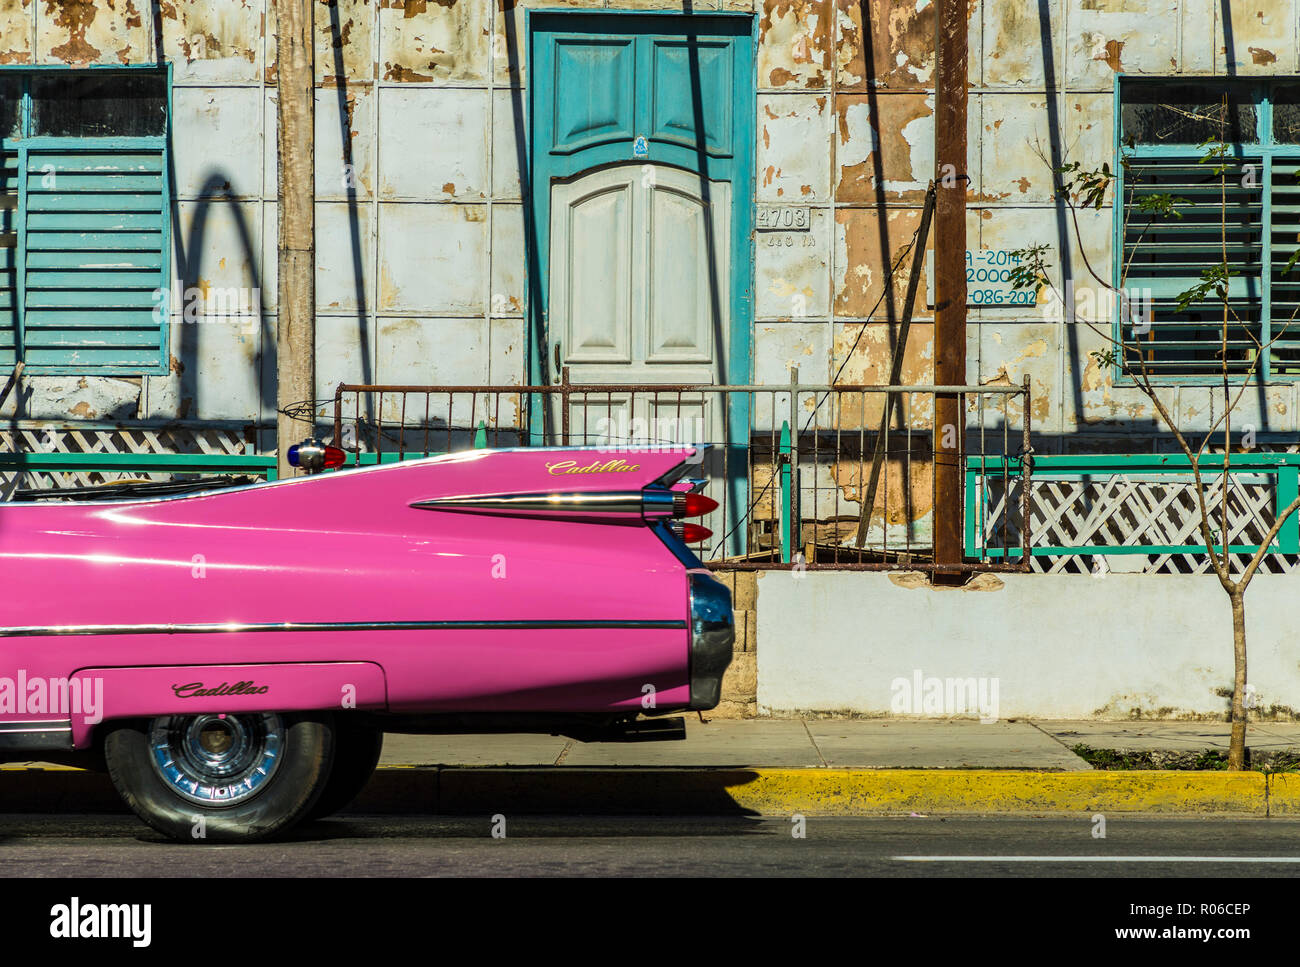 Ein klassisches amerikanisches Auto fahren, vorbei an einem alten Gebäude in Varadero, Kuba, Karibik, Karibik, Zentral- und Lateinamerika Stockfoto